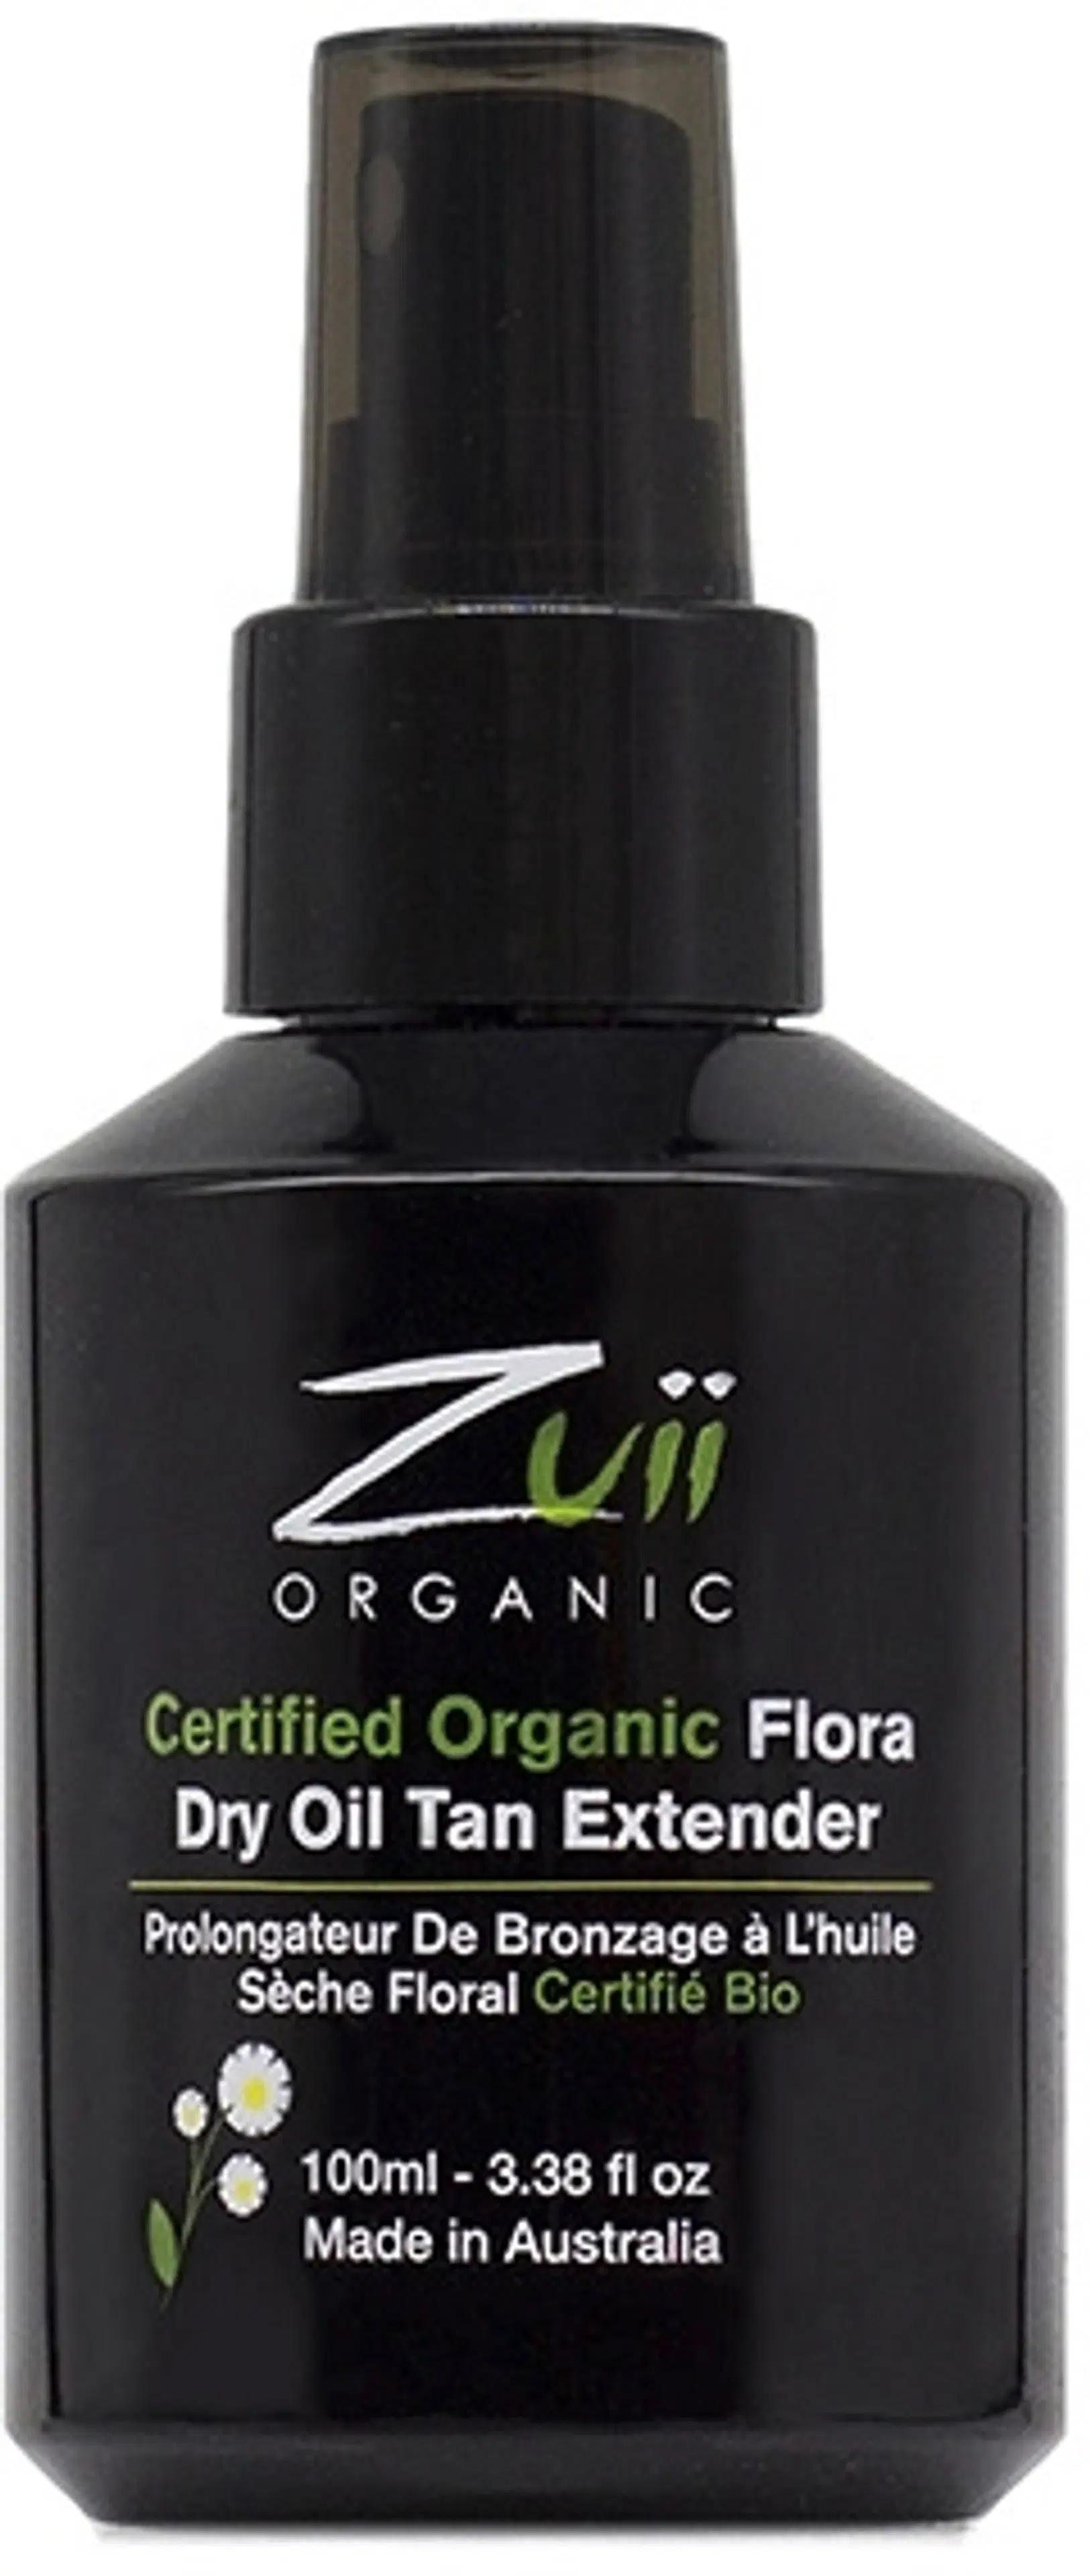 Zuii Organic Flora Dry Oil Tan Extender rusketusta pidentävä kuivaöljy 100ml